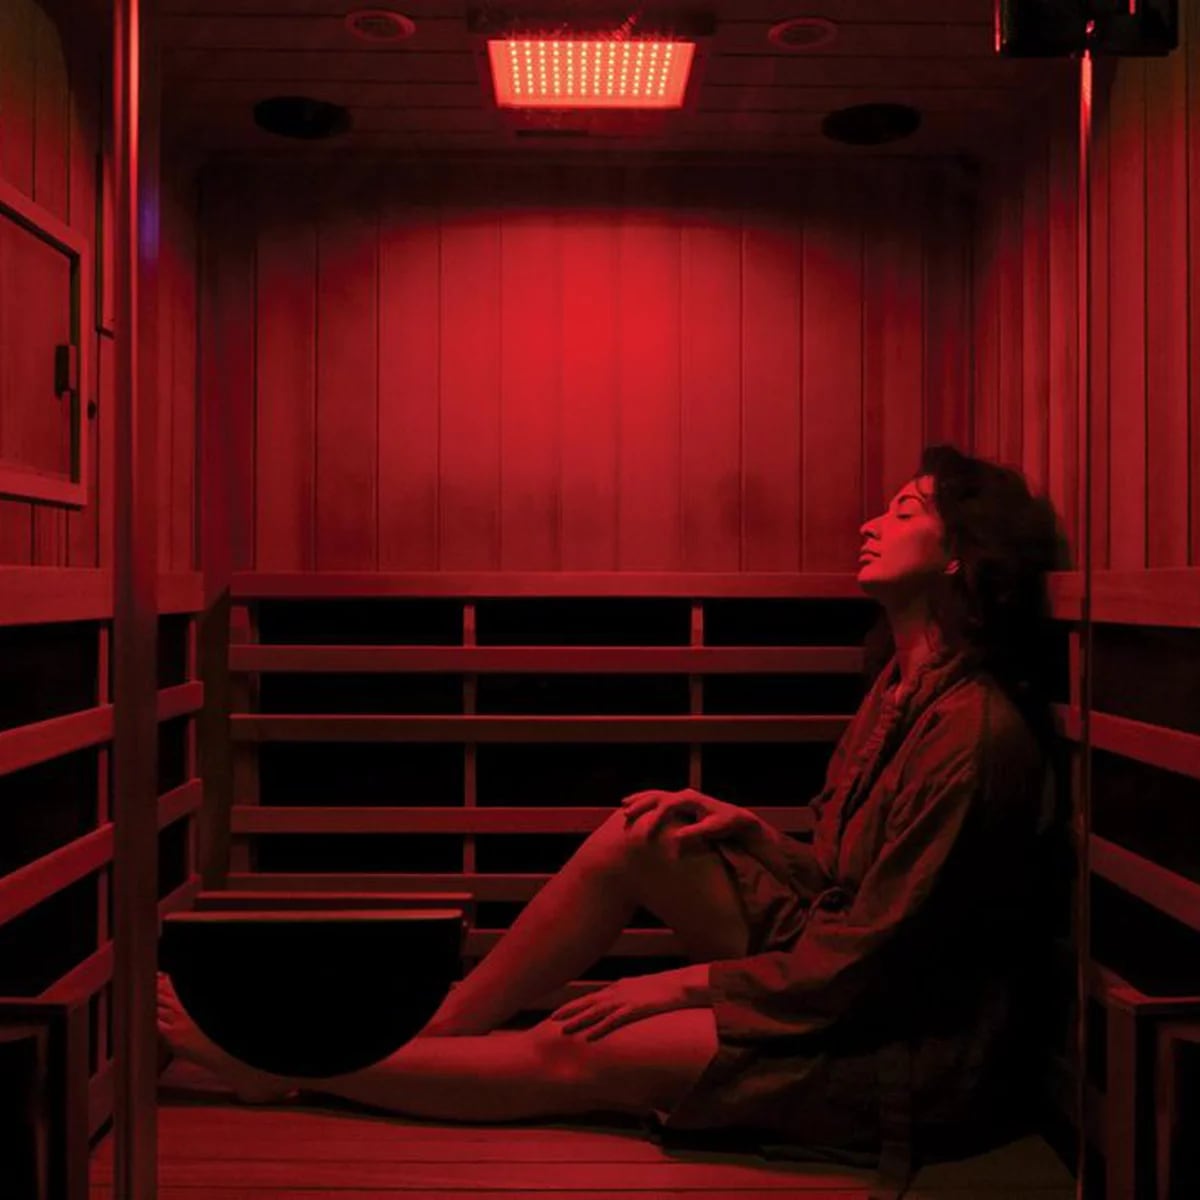 La moda del sauna infrarrojo: por qué es mejor que el convencional - Infobae